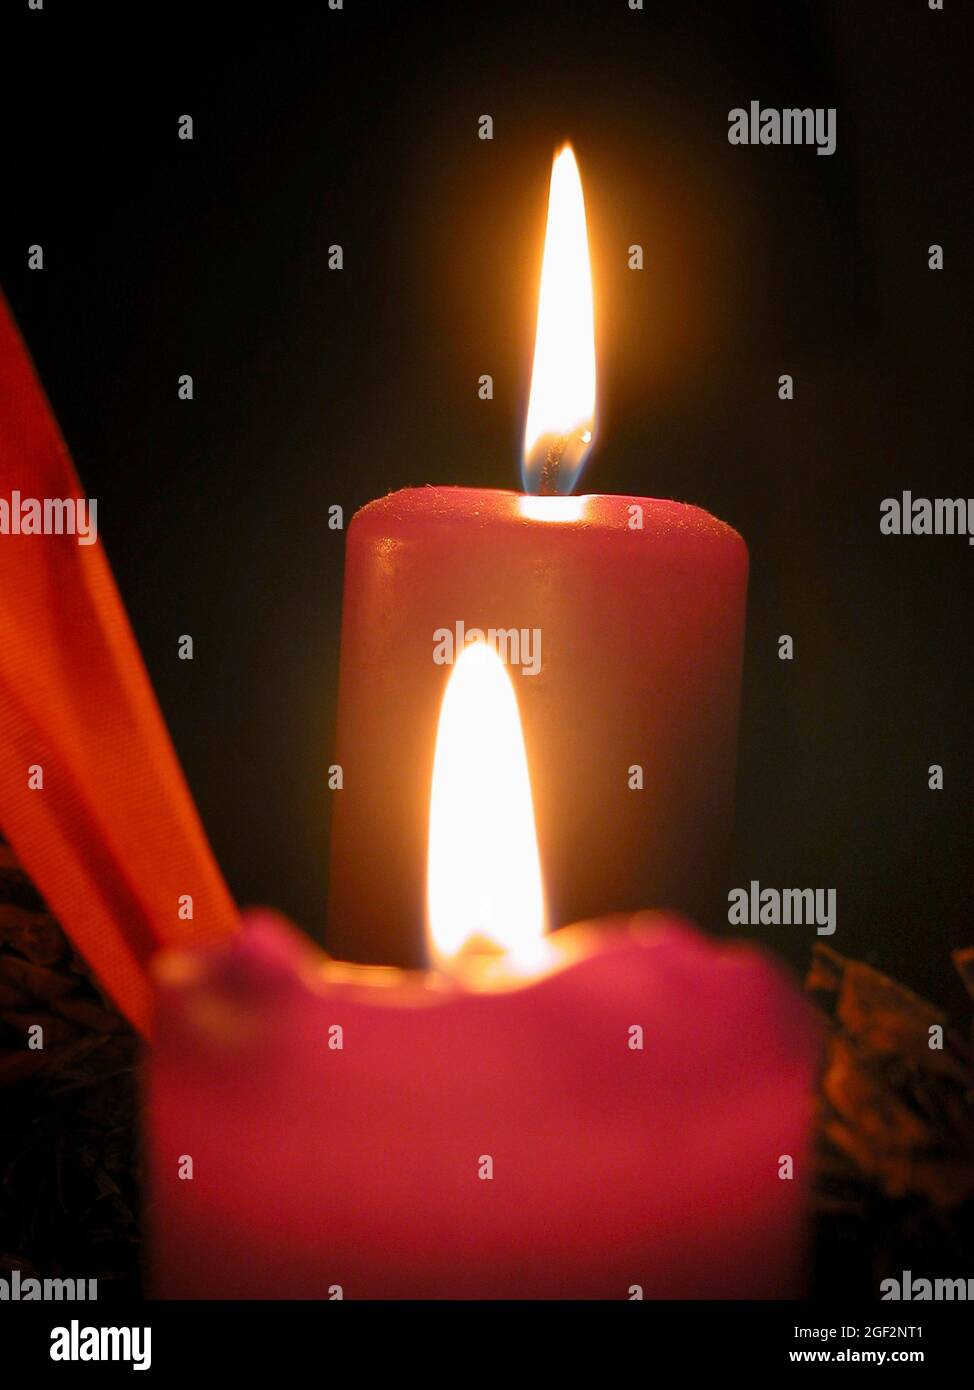 deux bougies allumées, flammes de bougie Photo Stock - Alamy